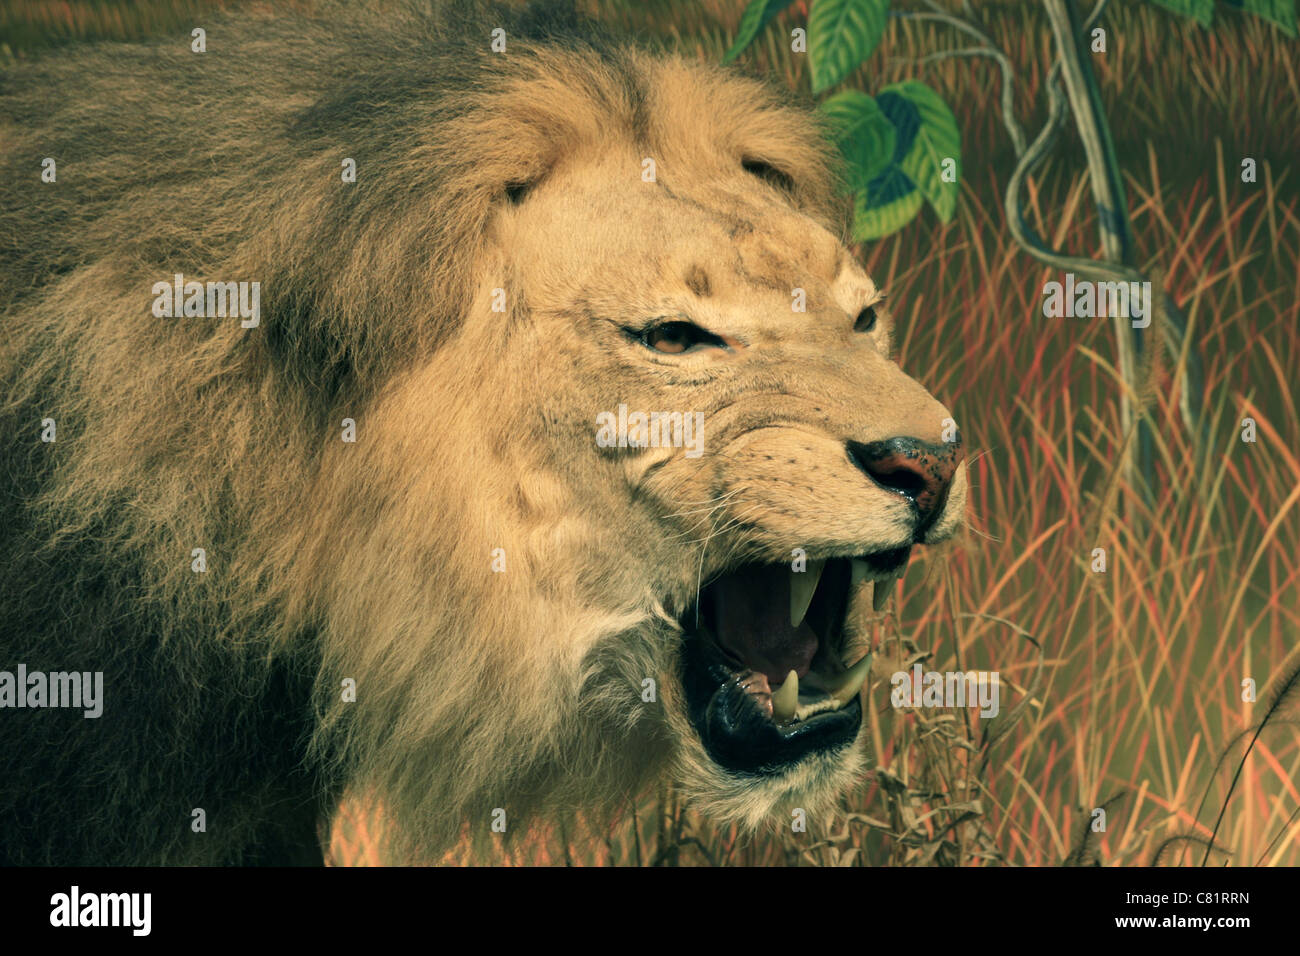 Tête de lion de l'Afrique de l'agressif avec bouche ouverte montrant les dents Banque D'Images